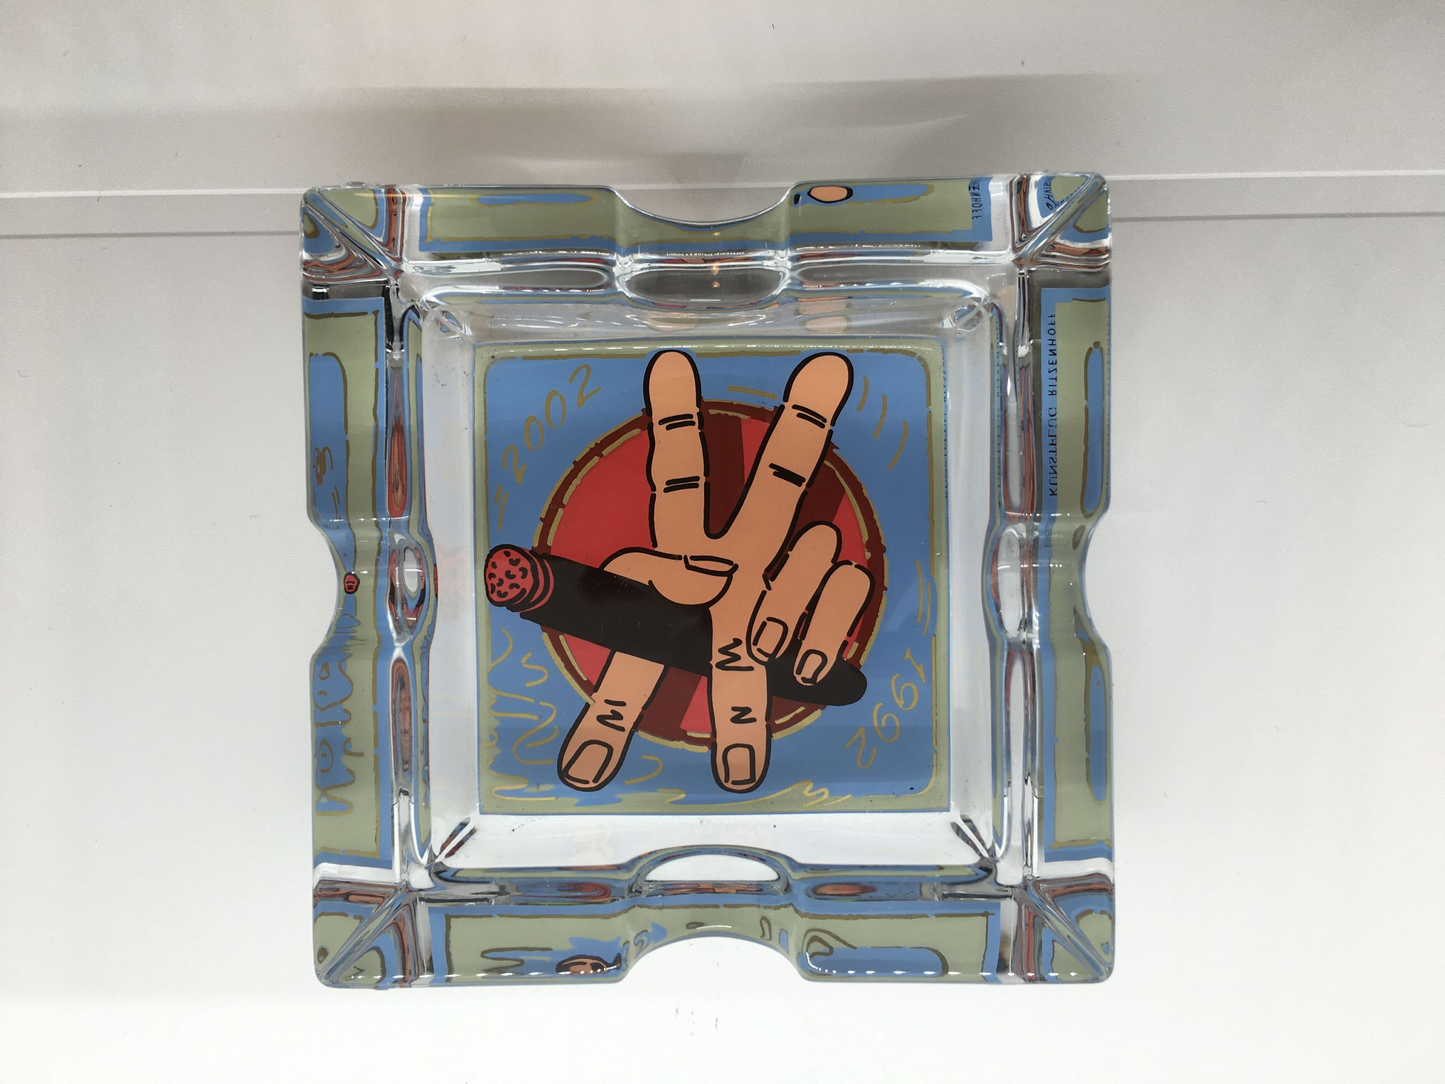 Posacenere quadrato in cristallo con decoro progettato da Kunstflug nel 2002, Edizione Limitata, della linea "Smoking Xclusive" di Ritzenhoff. Custodito in una scatola di legno con cerniere e chiusura in metallo Dimensioni: mm. 100 x 100